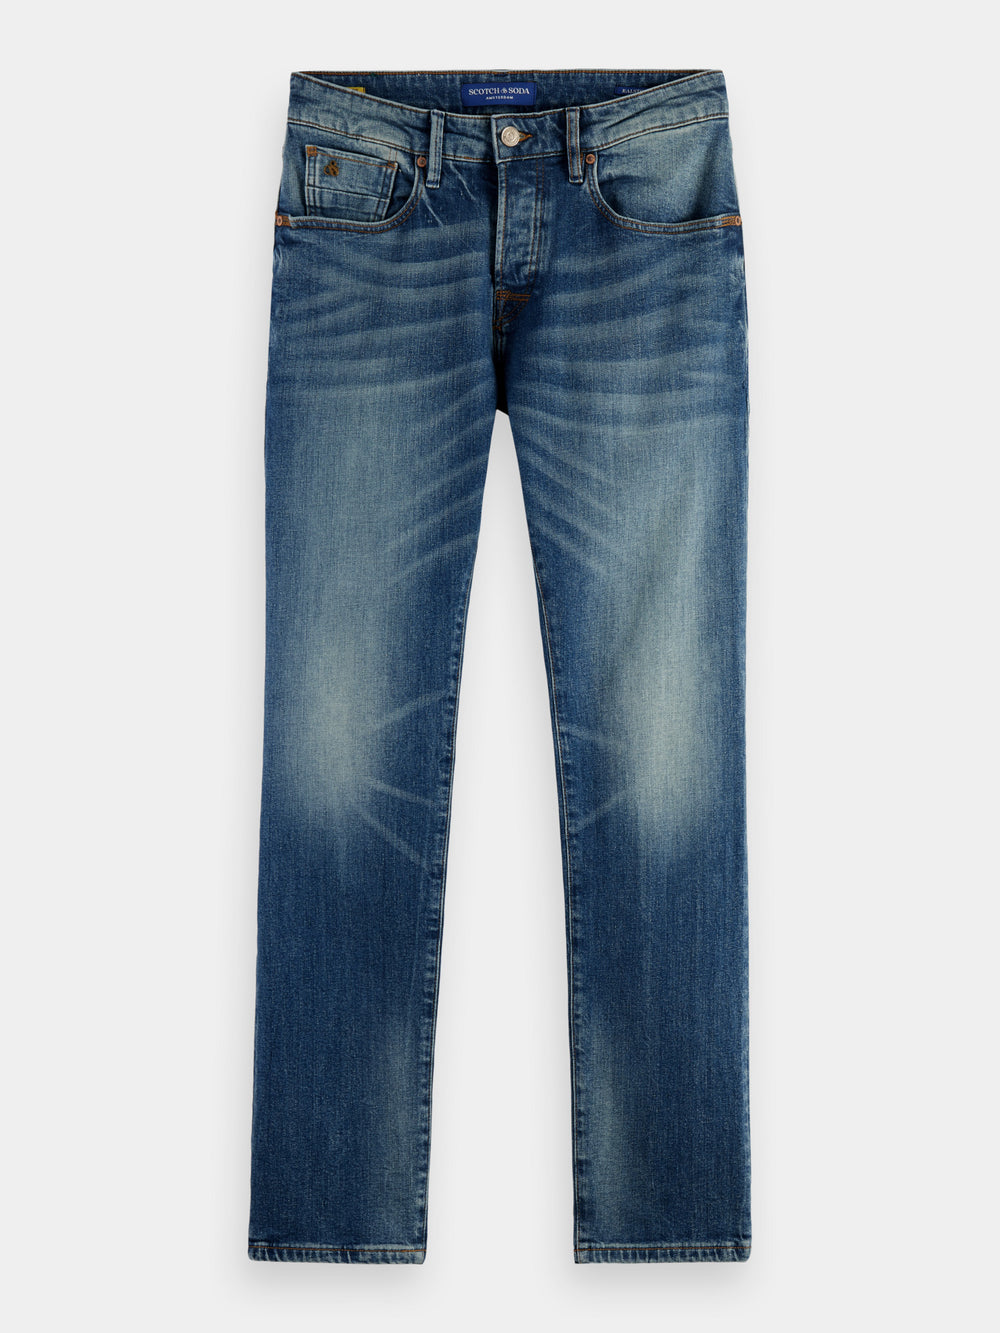 Ralston slim jeans - New Starter - Scotch & Soda AU